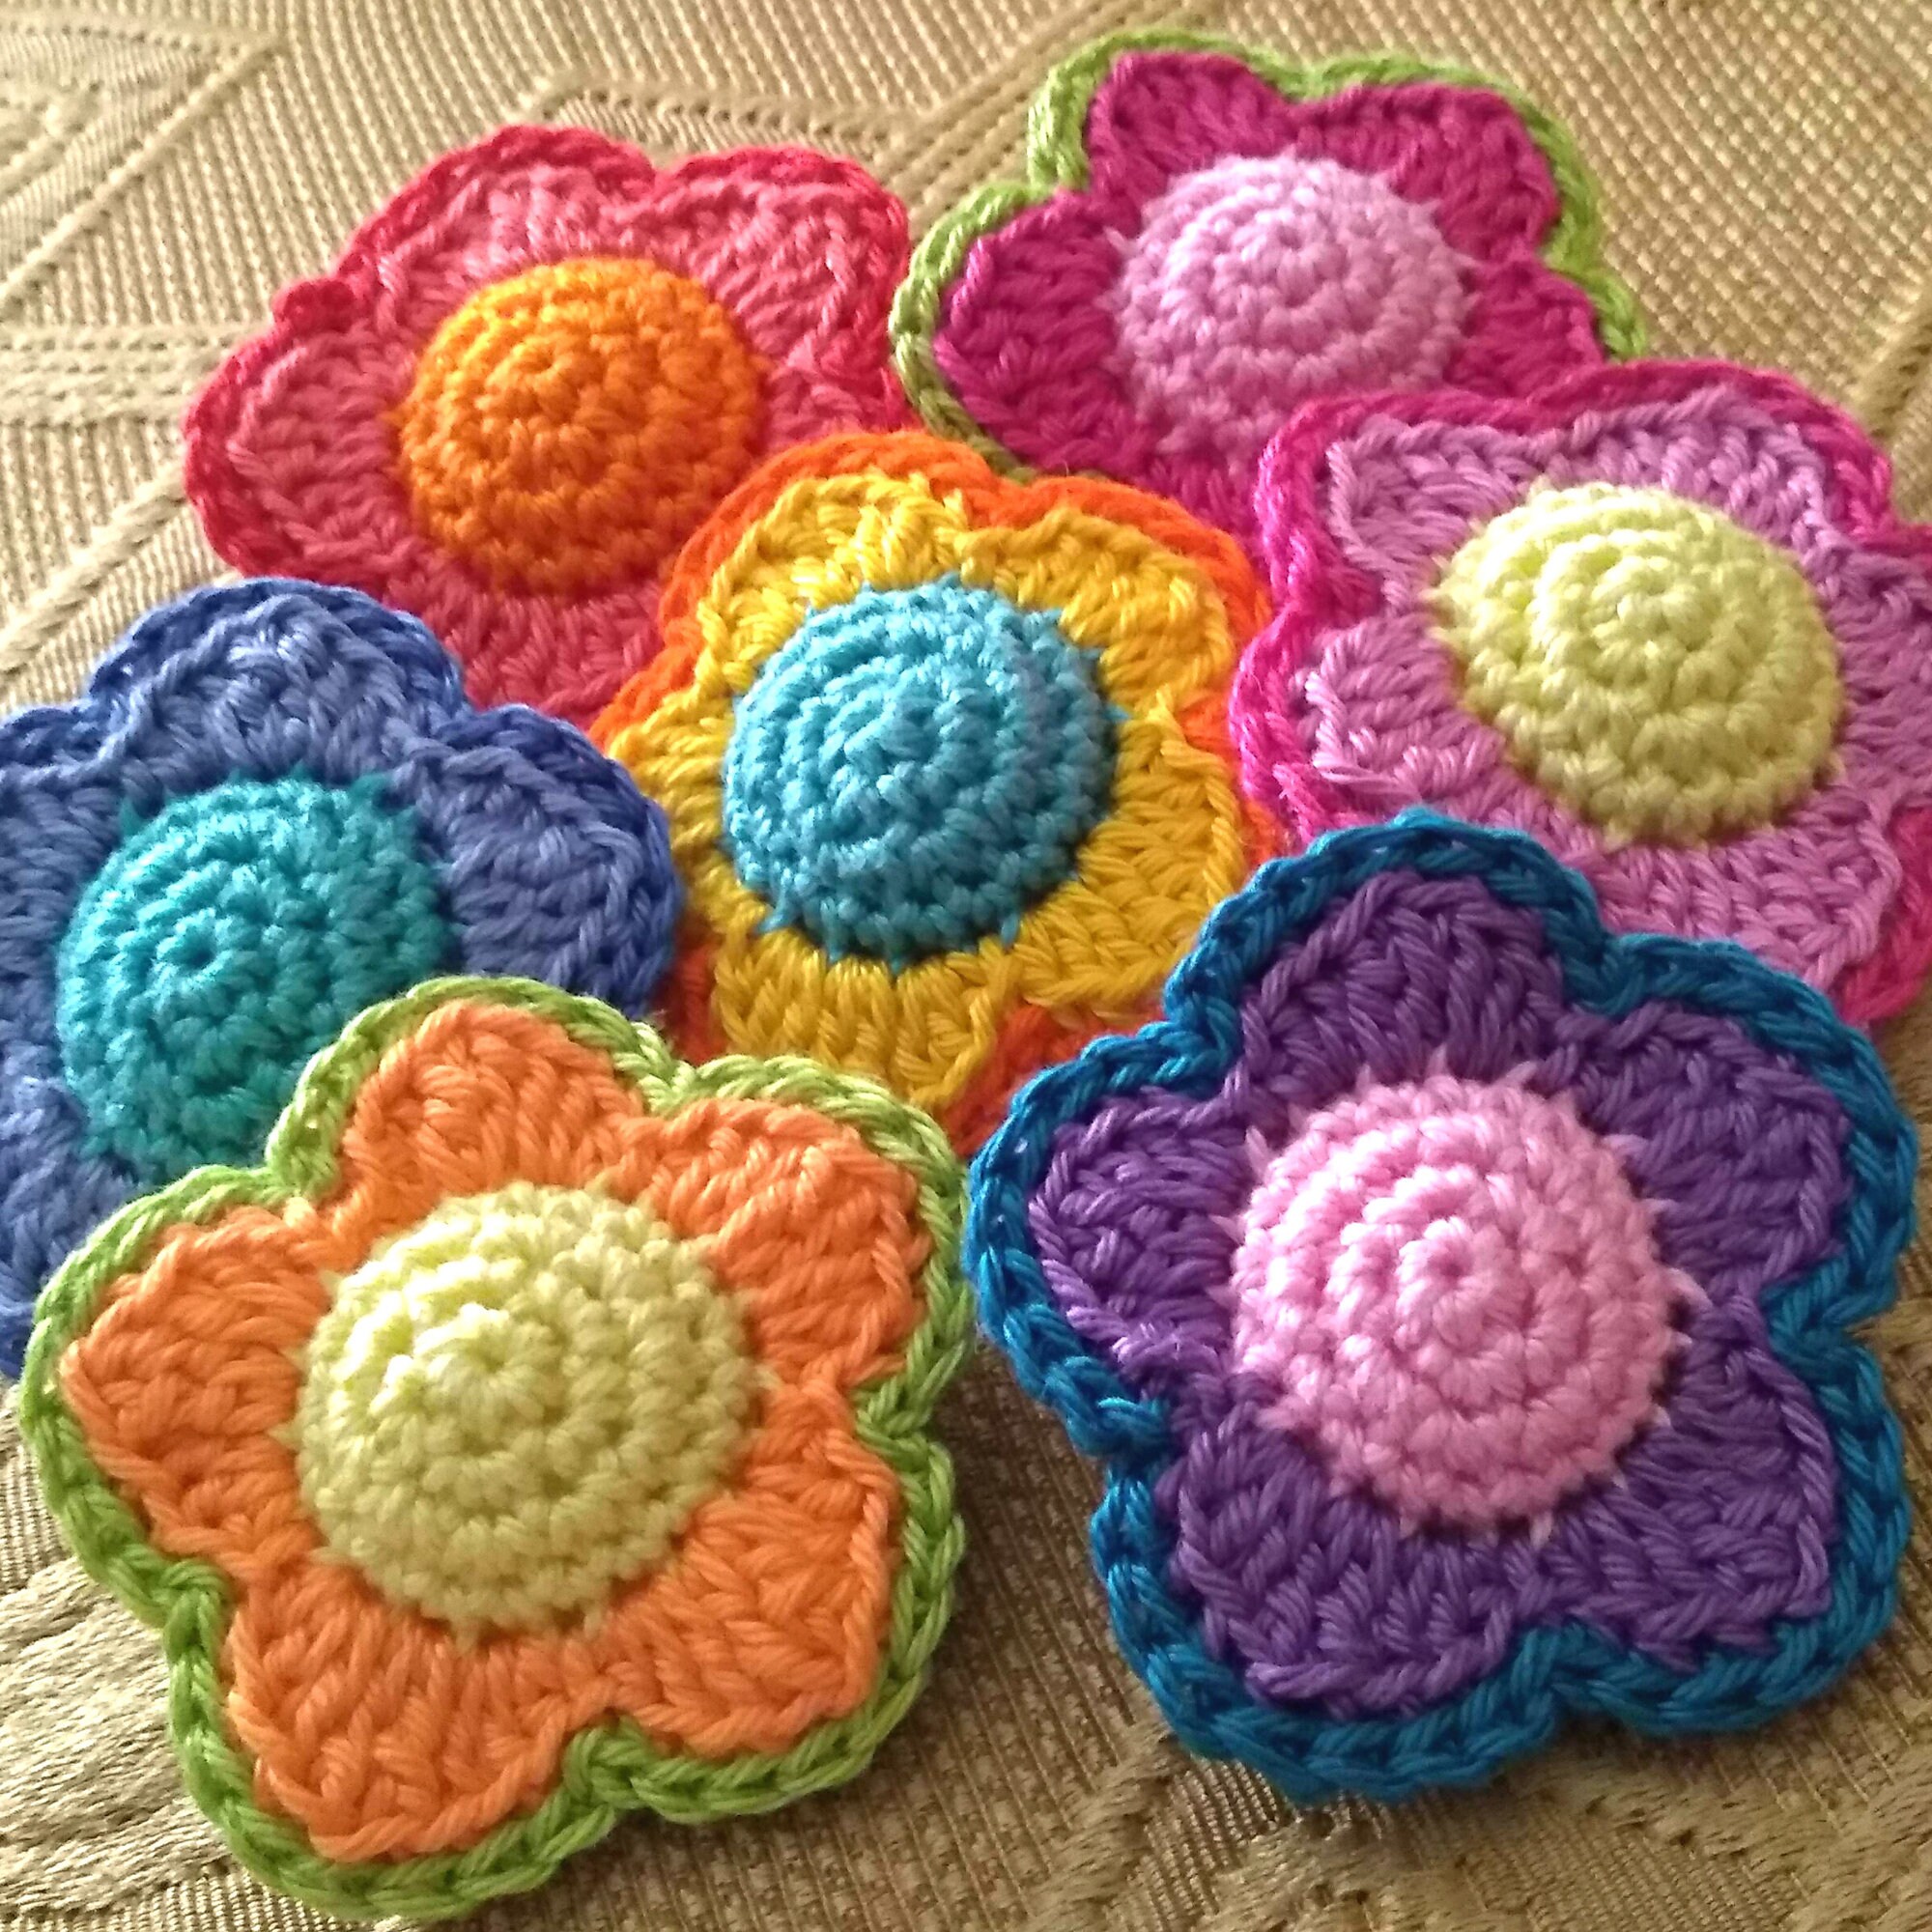 Crochet Pattern Flower / Haakpatroon Bloem english - Etsy Canada